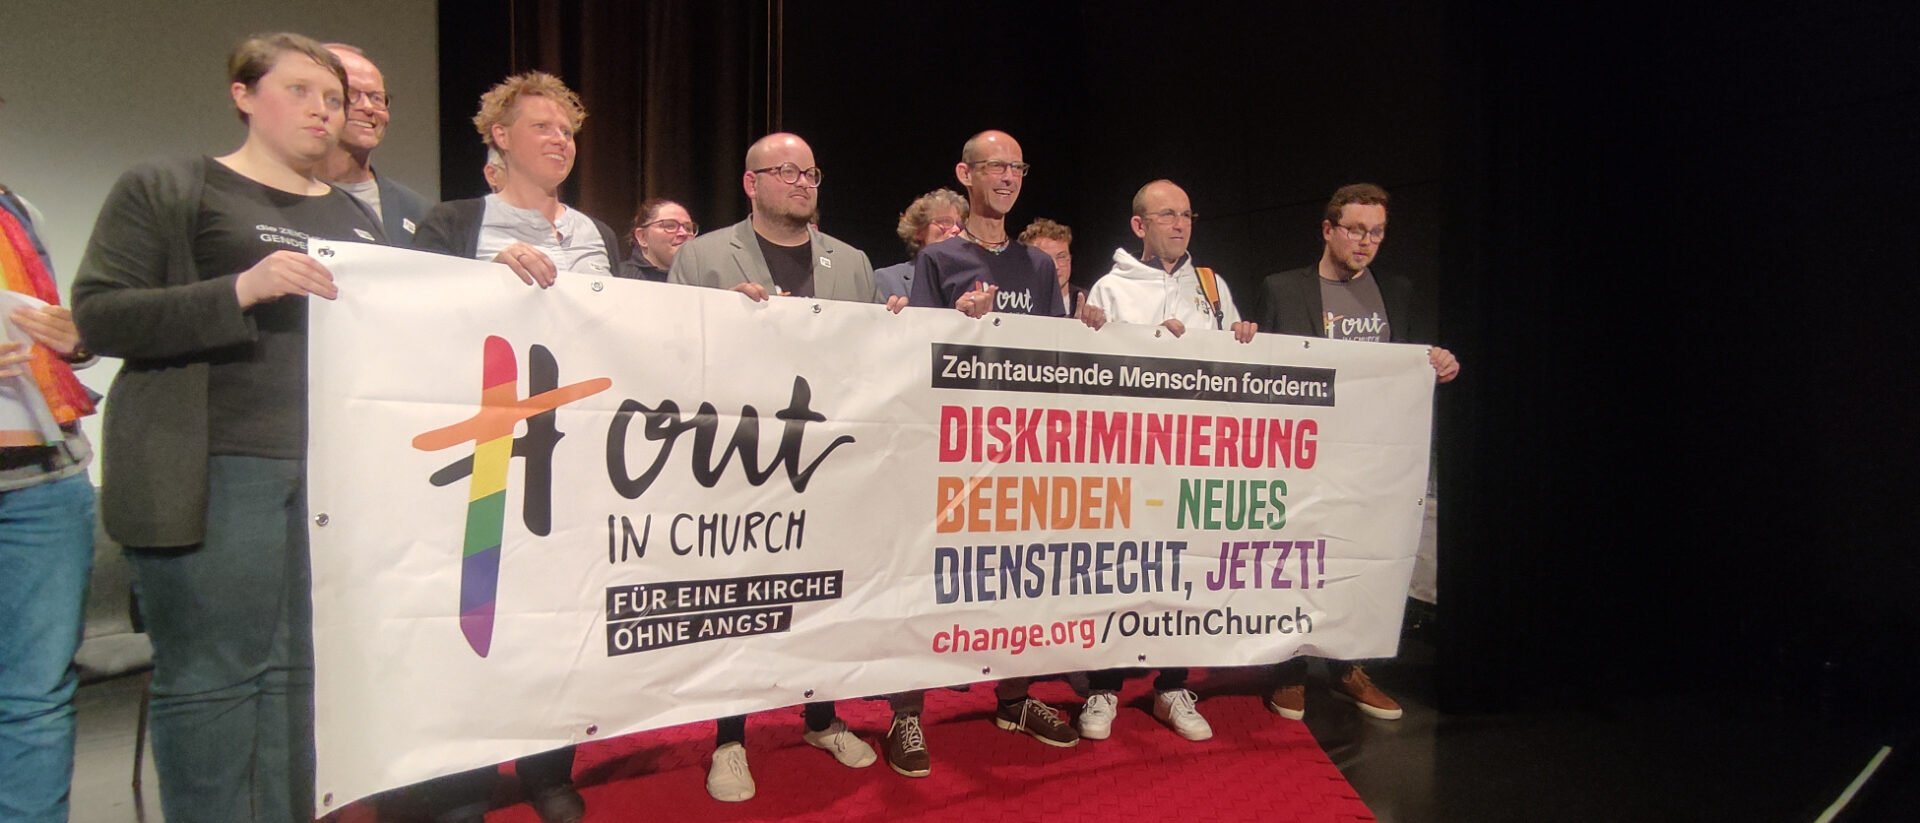 En Allemagne, l'opération #outinchurch a fait changer les règles d'emploi au sein de l'Eglise | © Raphael Rauch